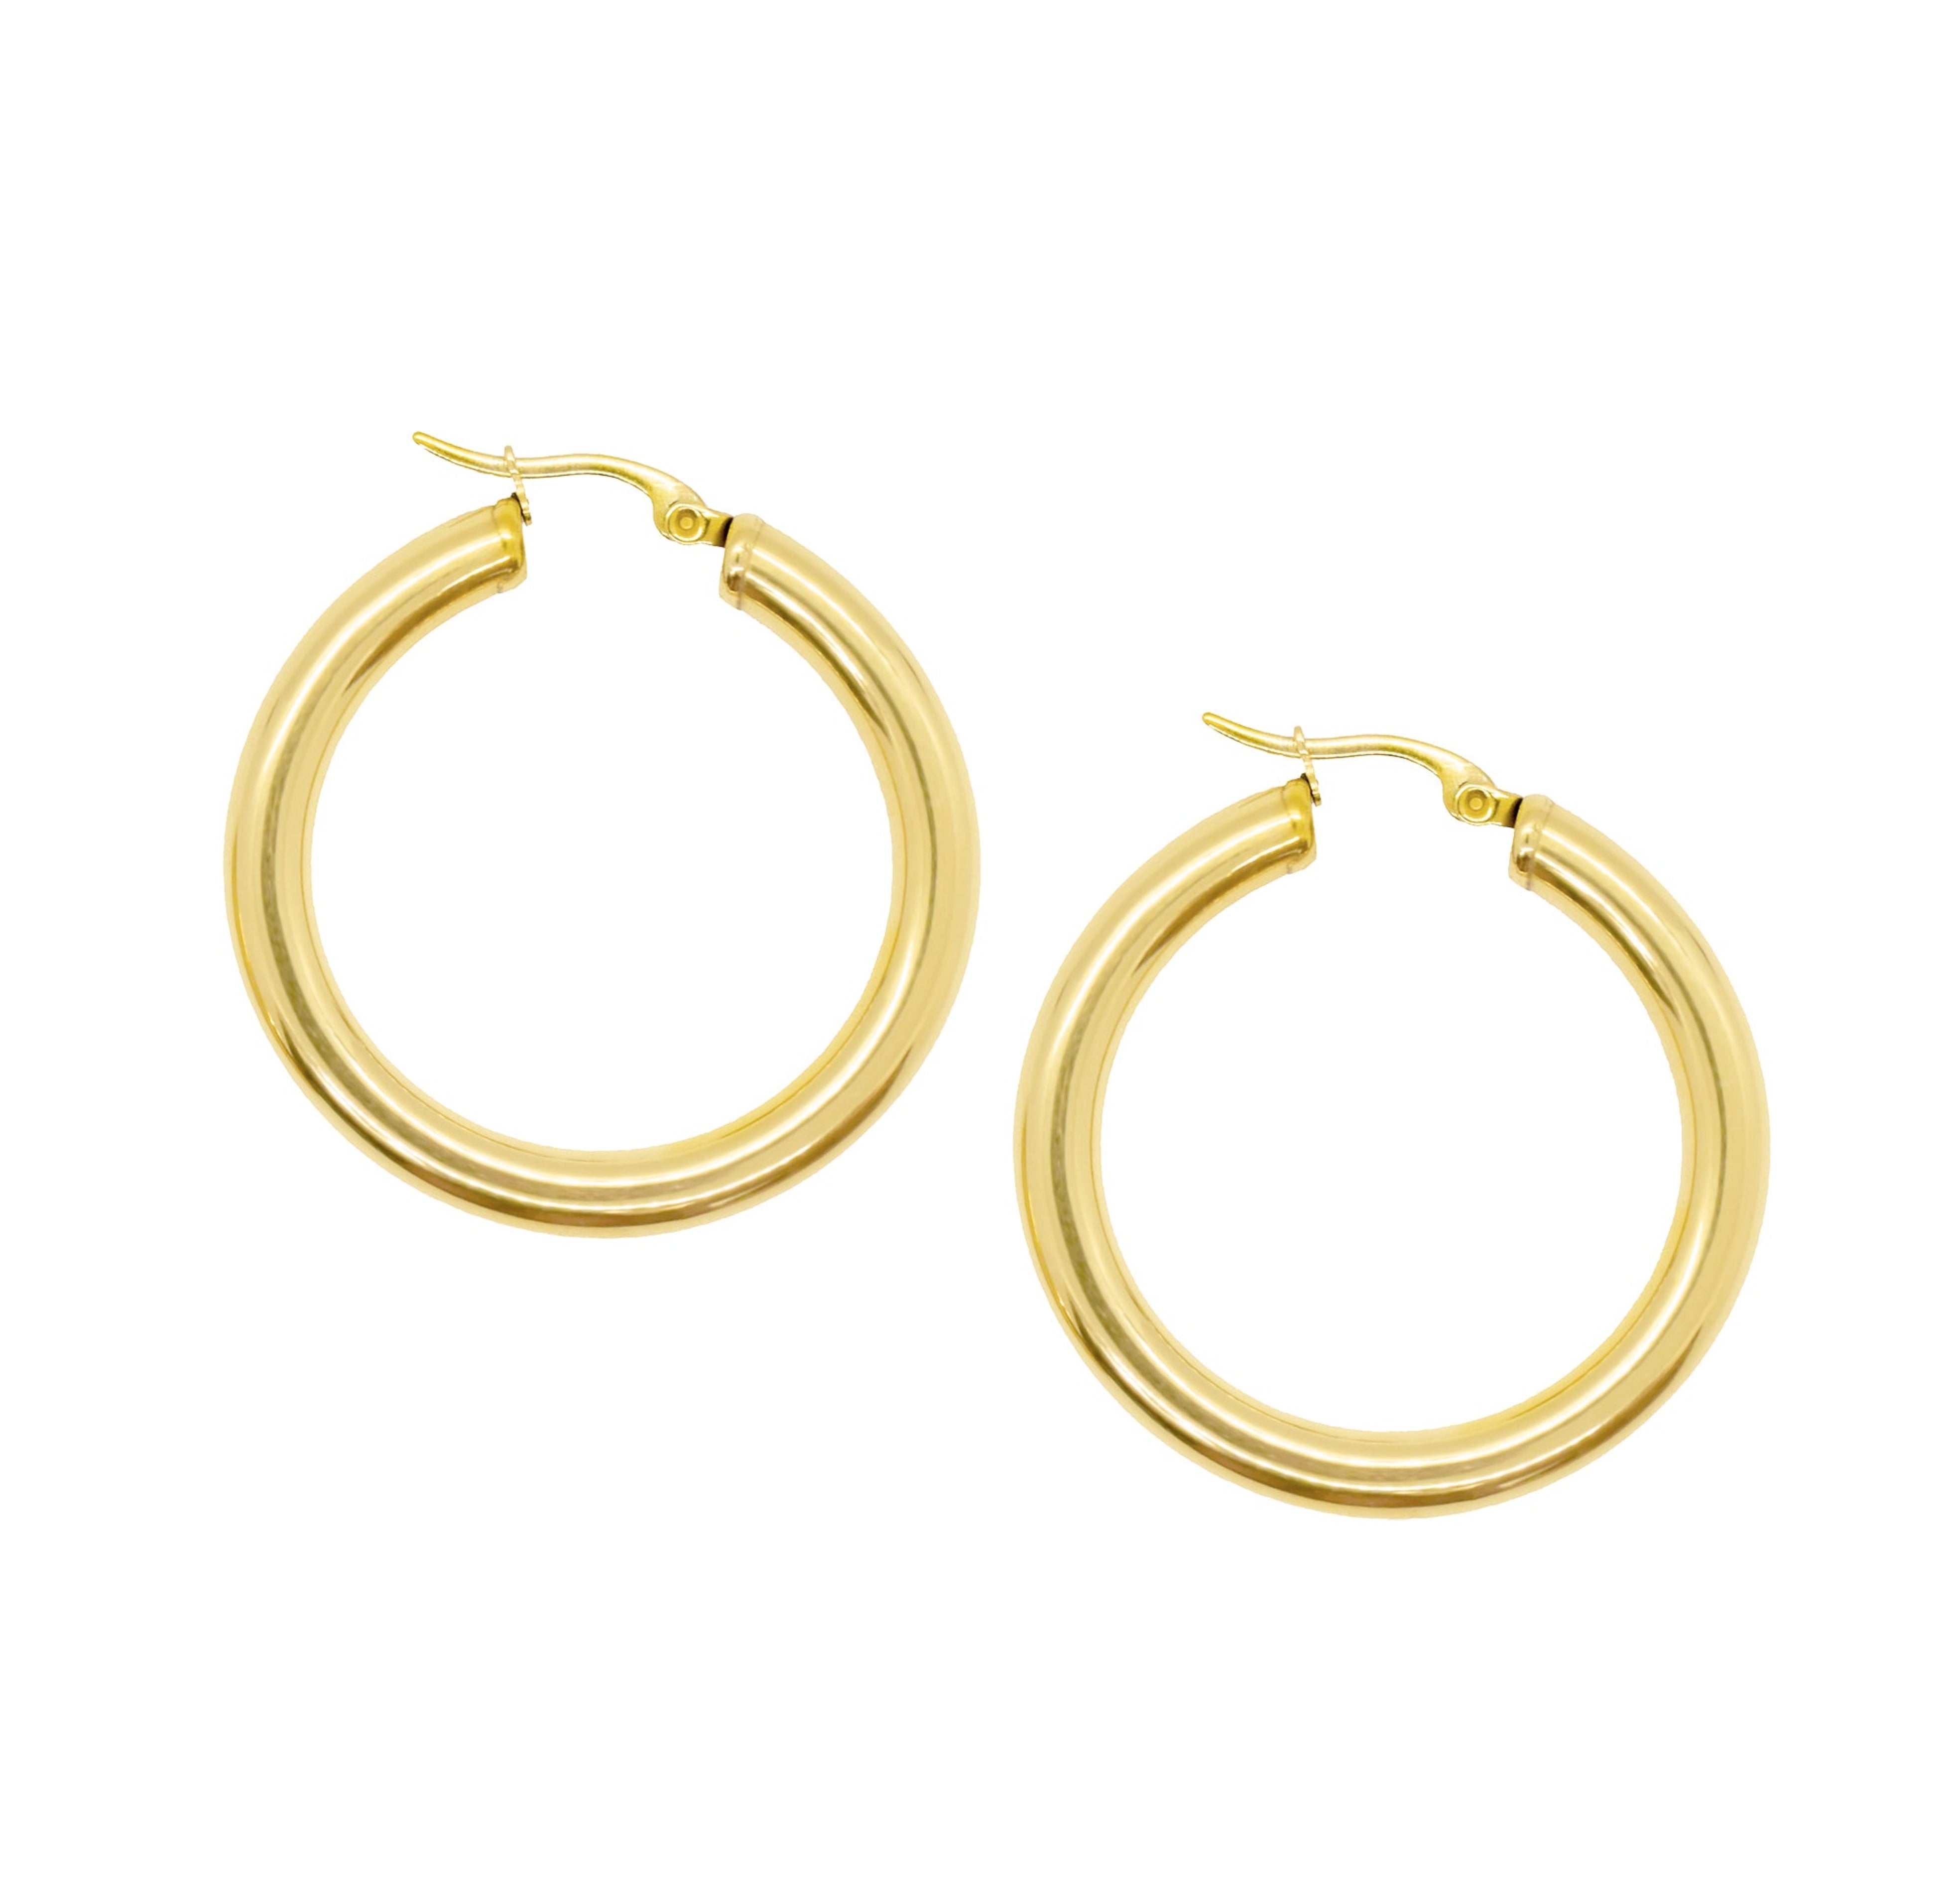 thick gold hoop earrings waterproof jewelry